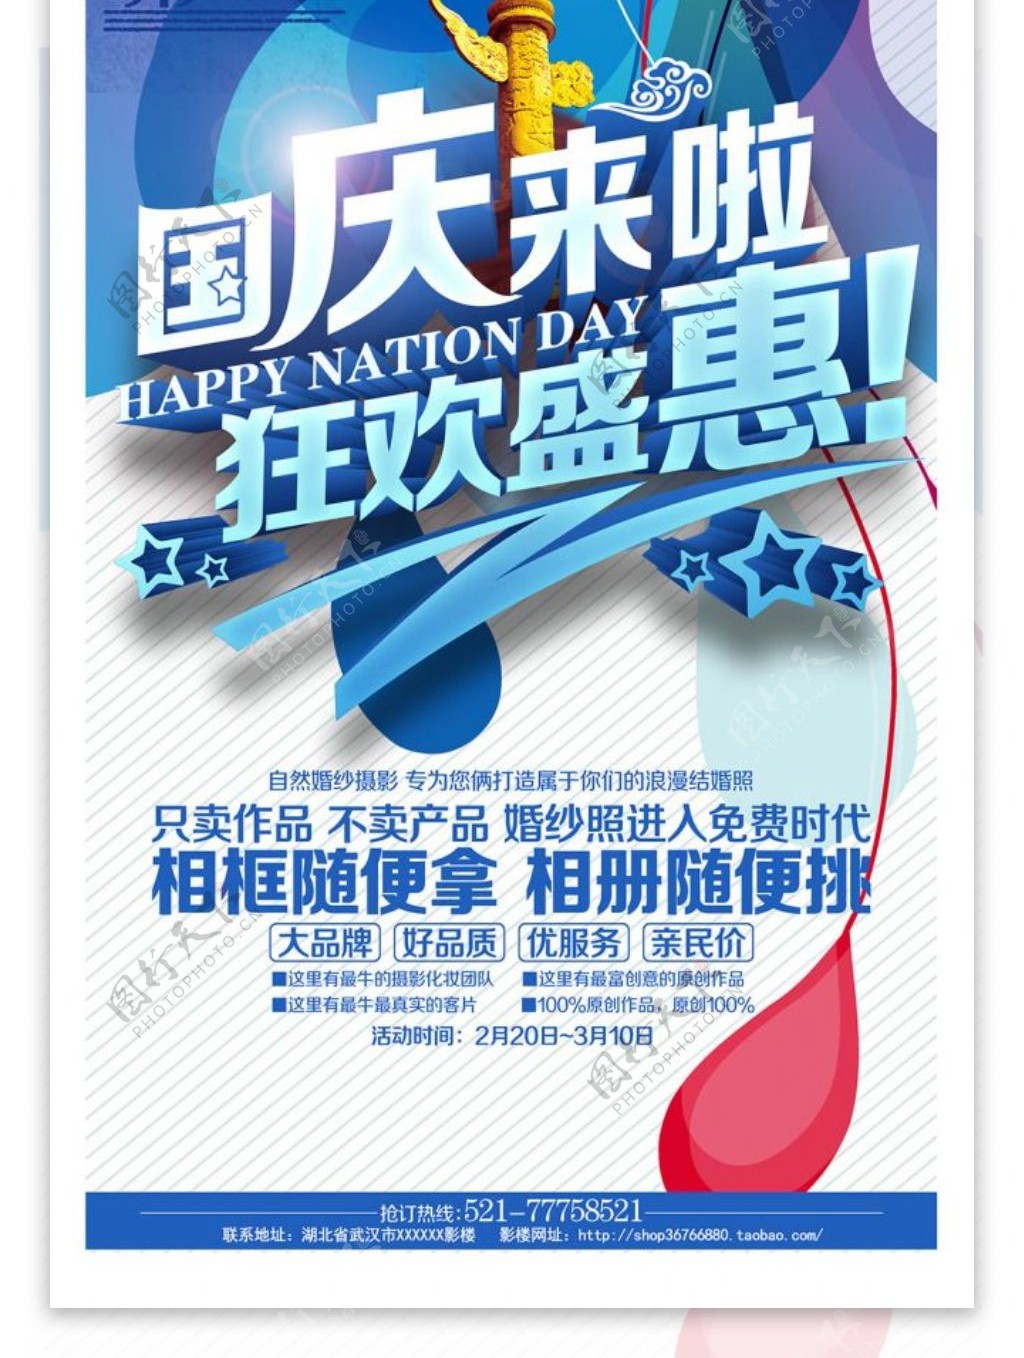 狂欢盛惠国庆节促销活动海报背景DM